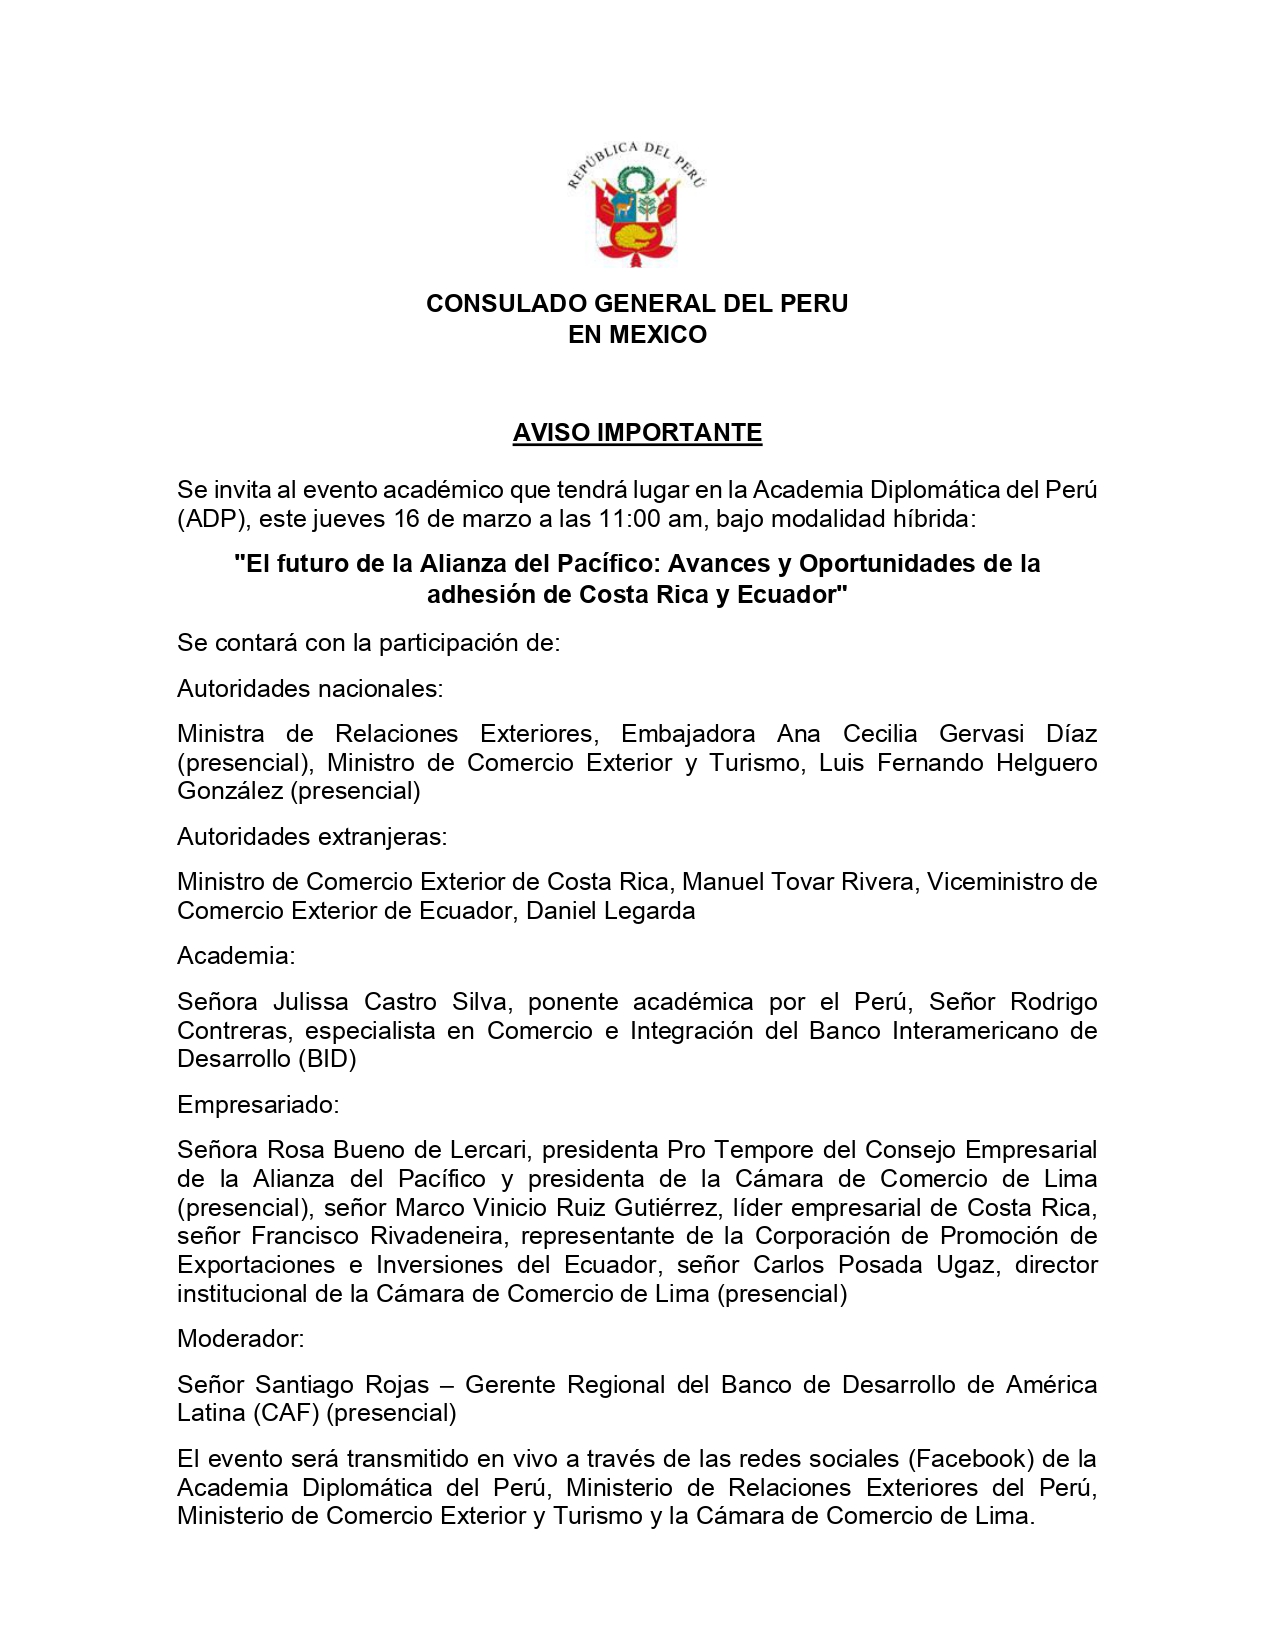 AVISO Avances y Oportunidades de la adhesión de Costa Rica y Ecuador_page-0001.jpg